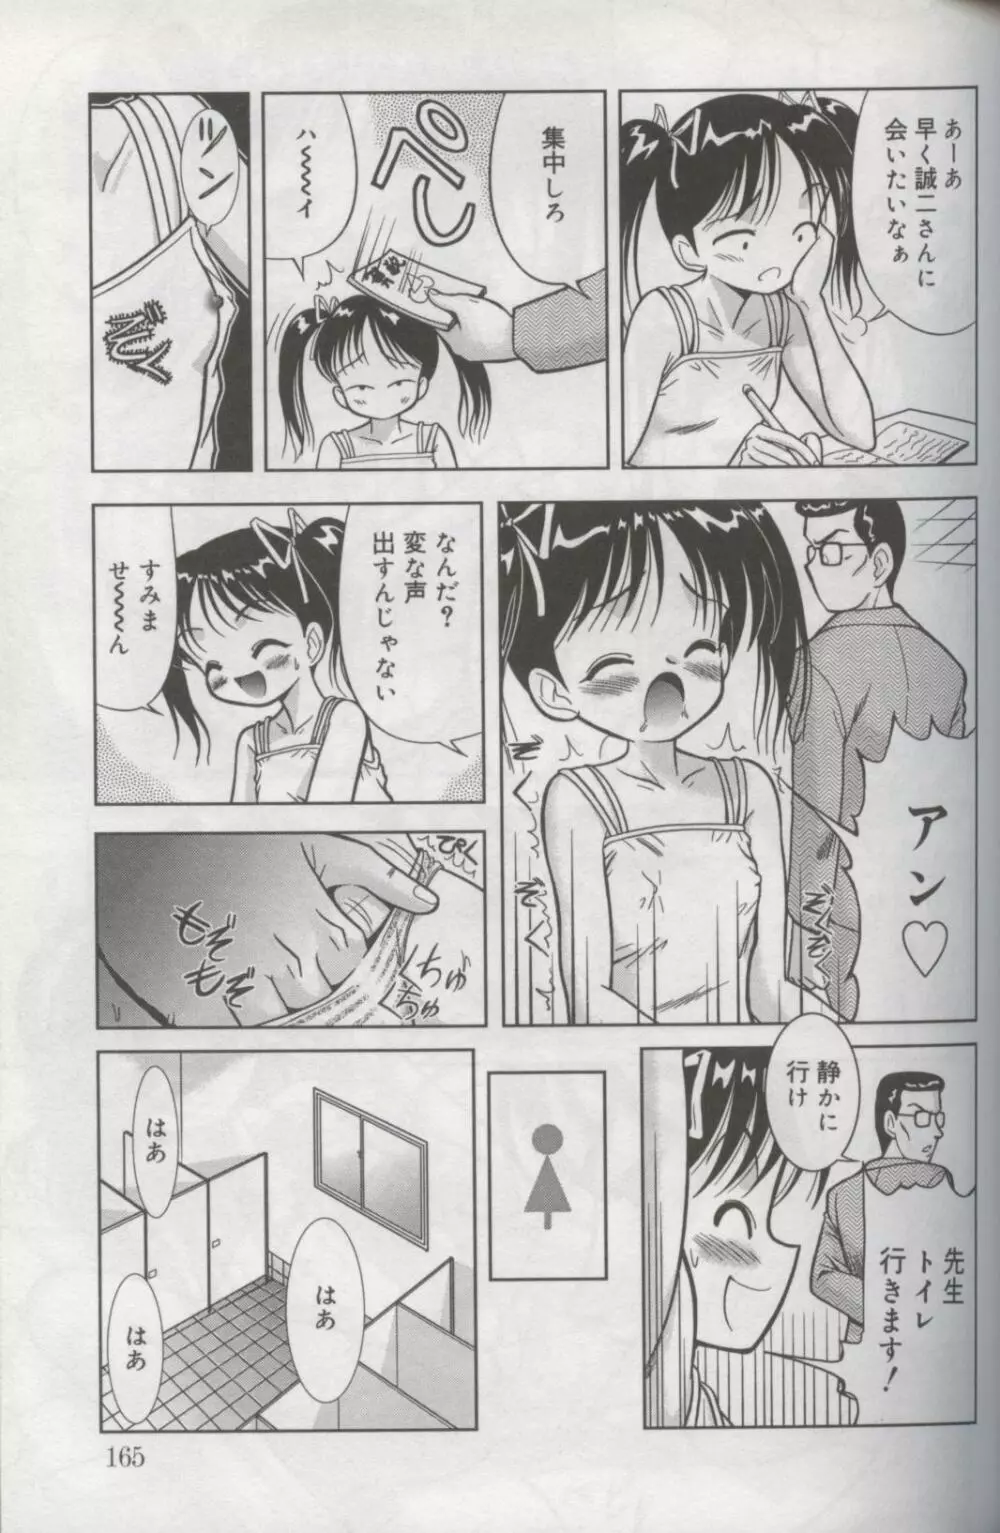 Kotori-kan Vol 3 162ページ